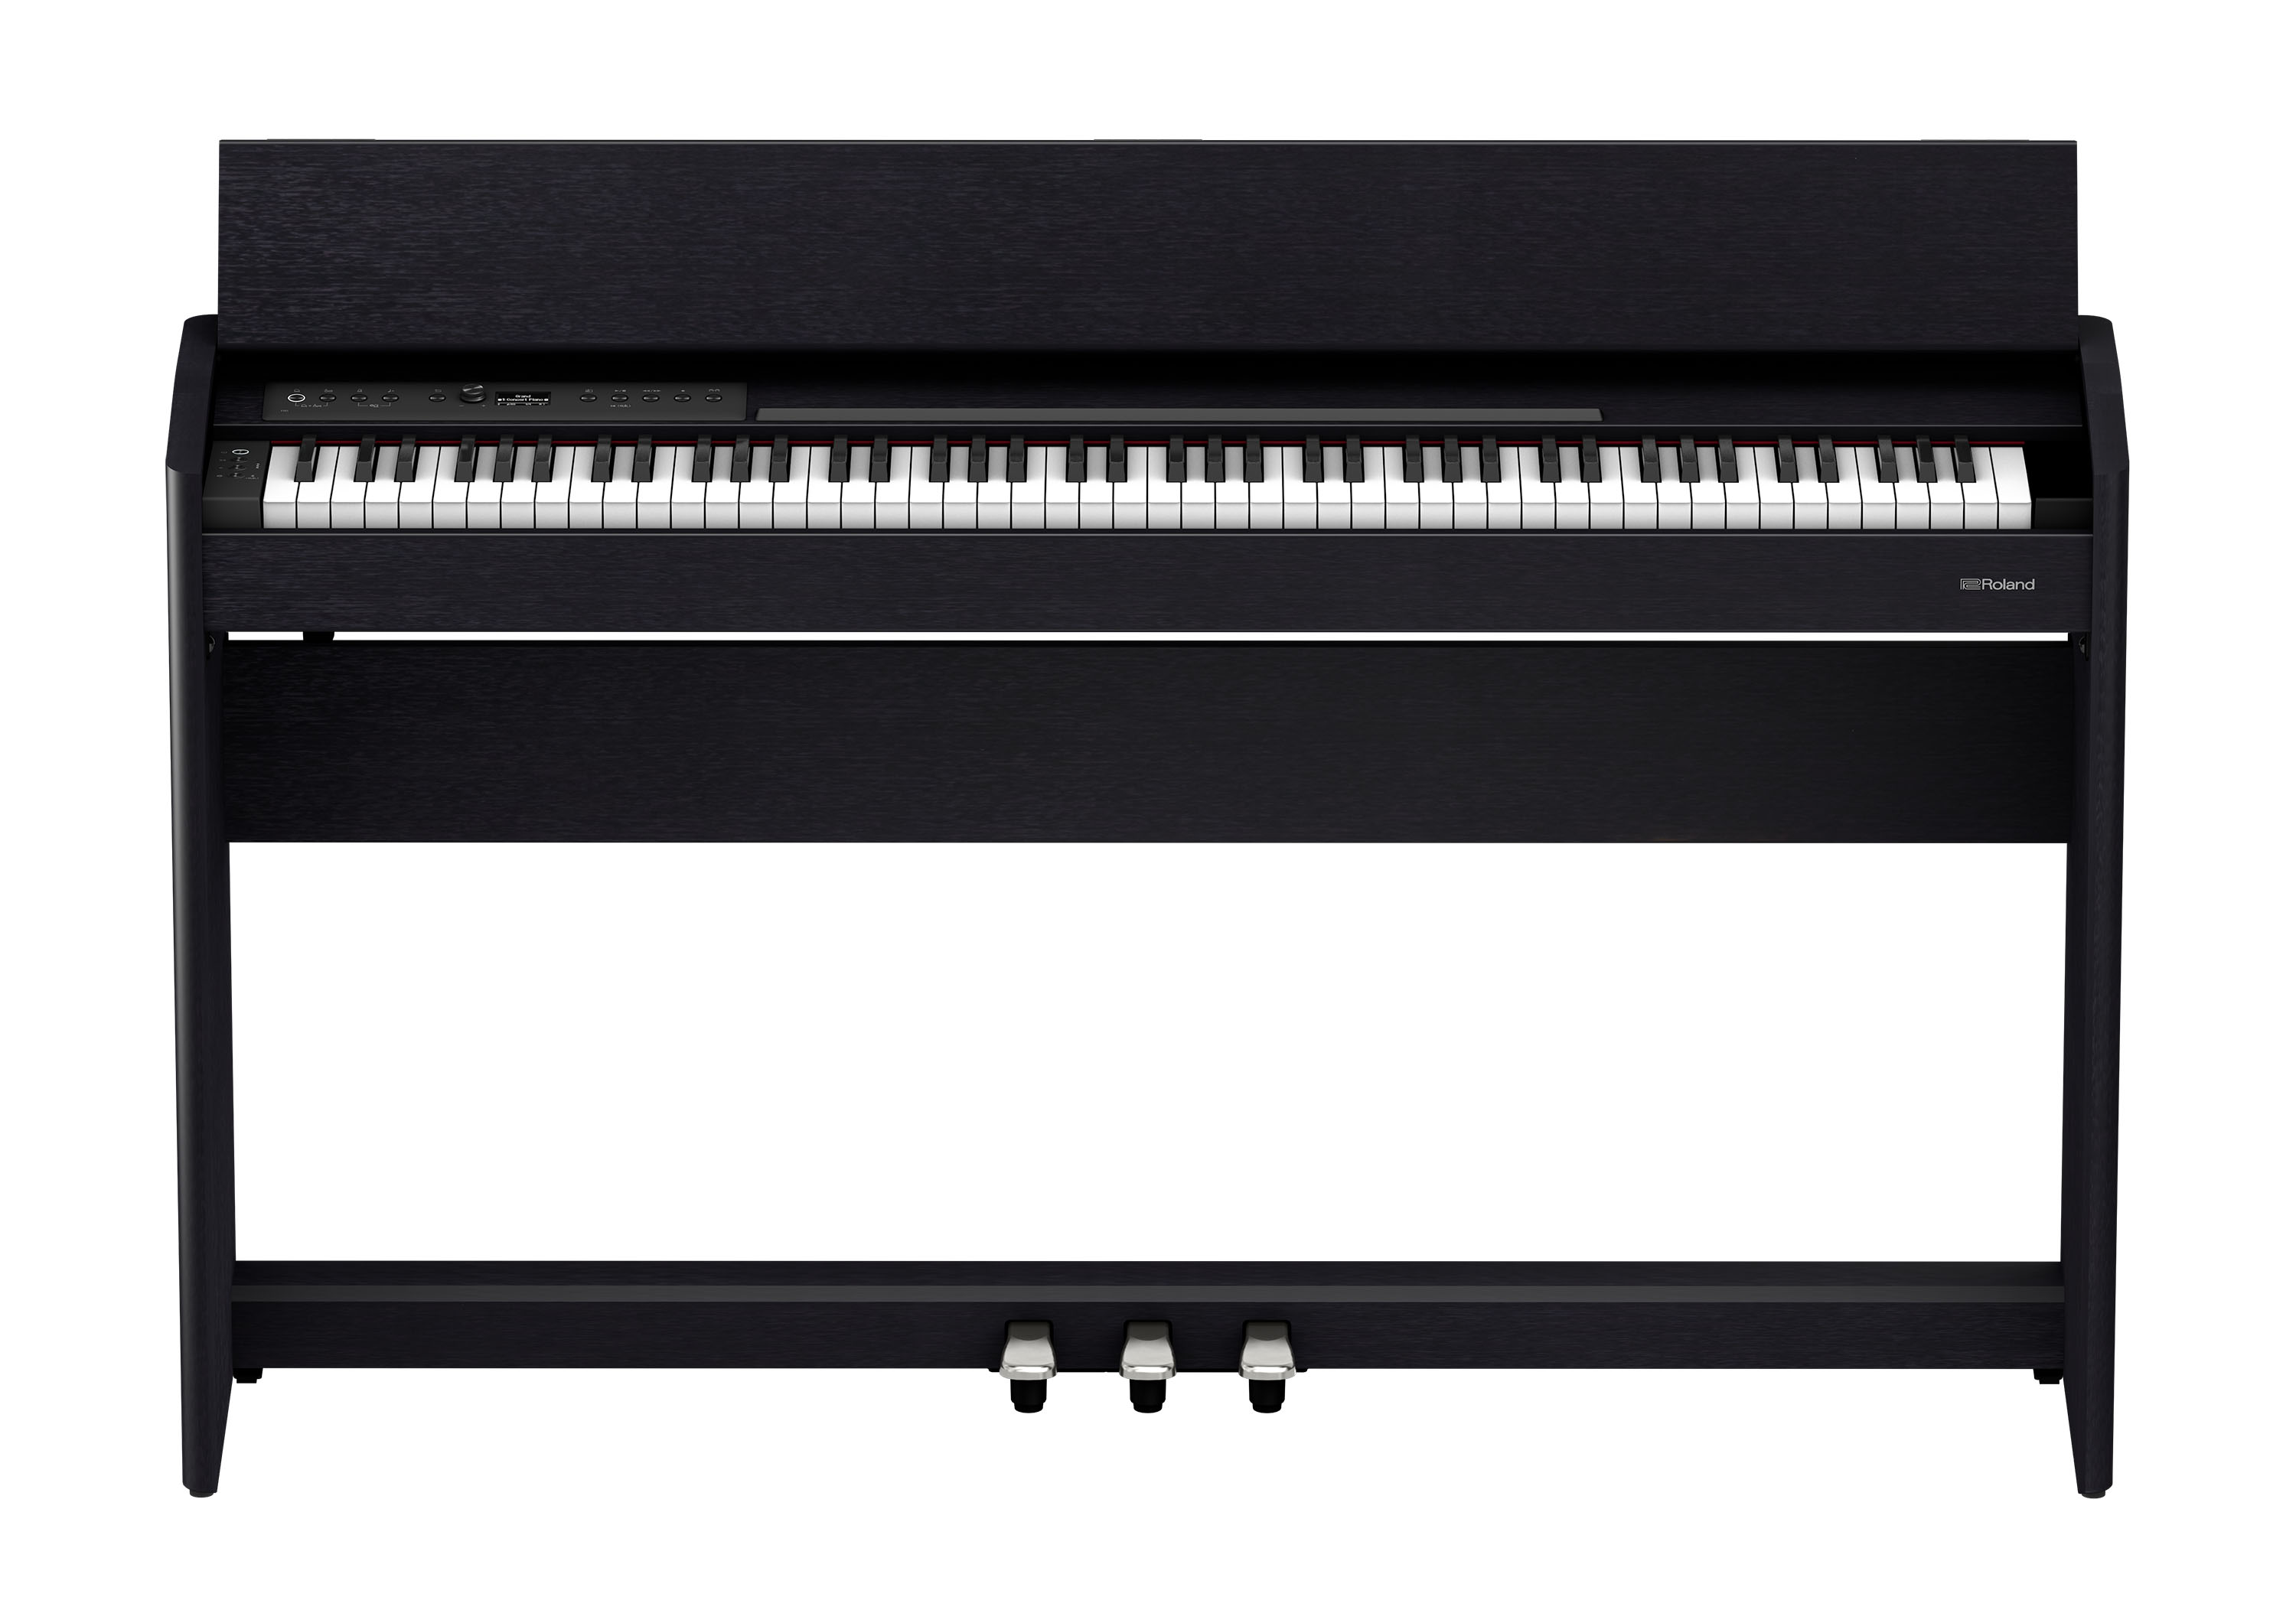 youpin vvave 8 key музыкальный инструмент фортепиано для большого пальца Цифровые пианино Roland F701-CB